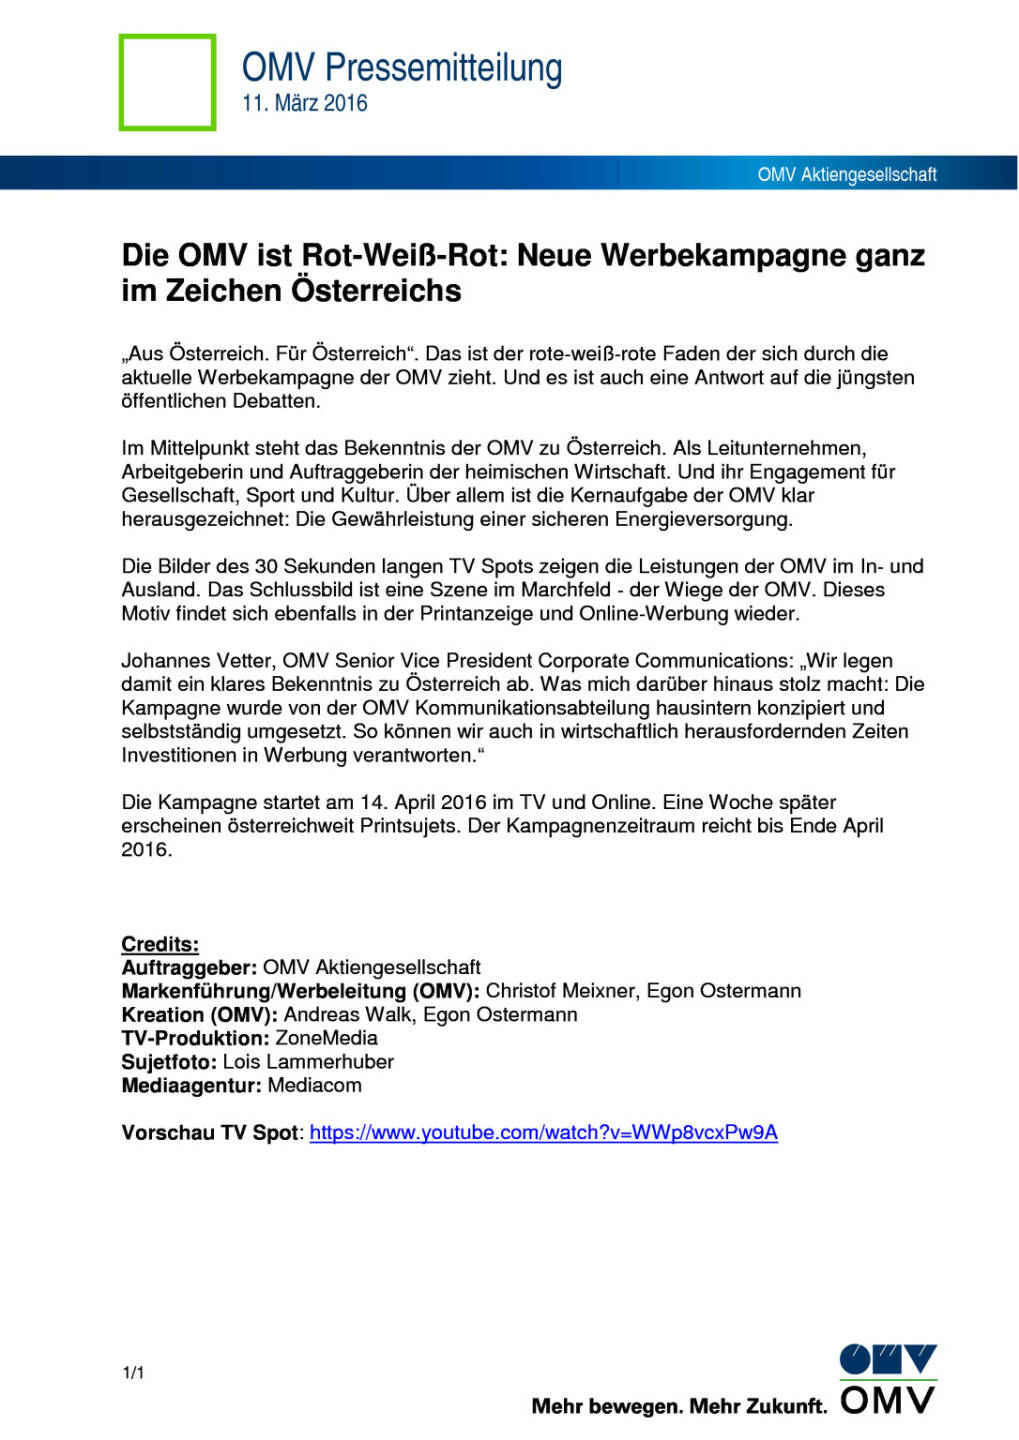 OMV ist Rot-Weiß-Rot: Neue Werbekampagne ganz im Zeichen Österreichs, Seite 1/2, komplettes Dokument unter http://boerse-social.com/static/uploads/file_774_omv_ist_rot-weiss-rot_neue_werbekampagne_ganz_im_zeichen_osterreichs.pdf